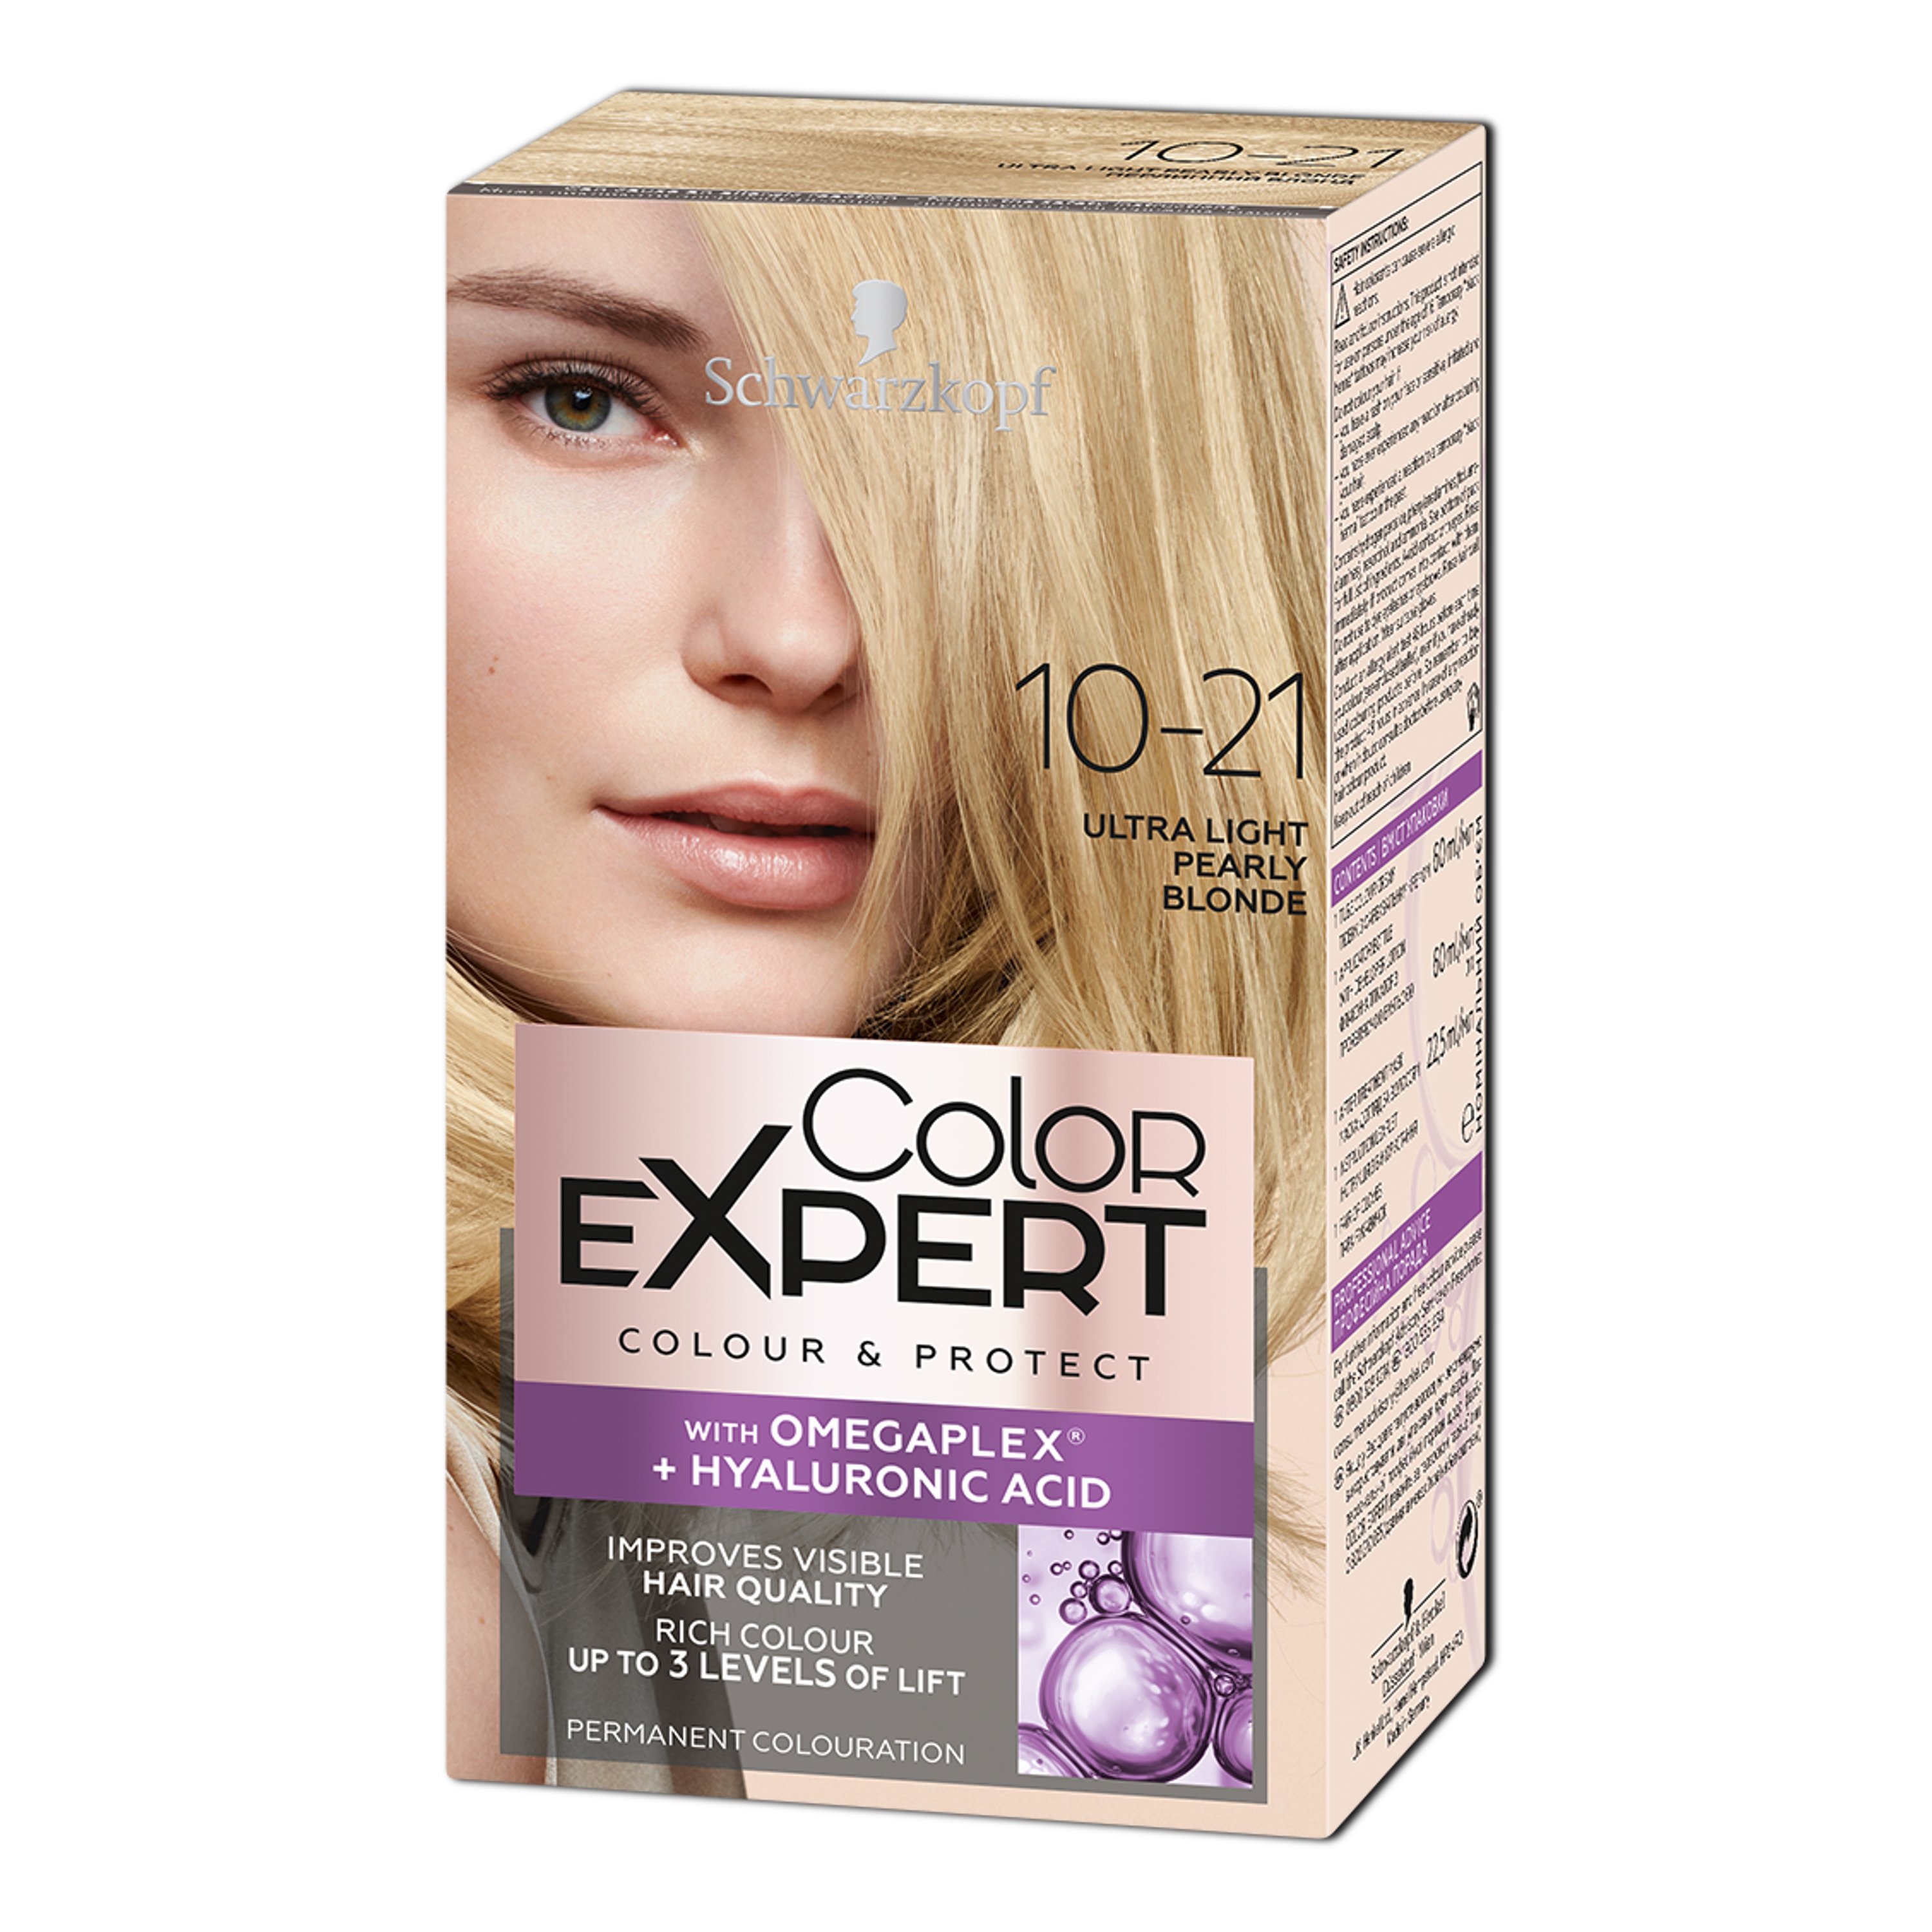 Крем-краска для волос Schwarzkopf Color Expert, с гиалуроновой кислотой, тон 10-21 (Жемчужный Блонд), 142,5 мл - фото 1